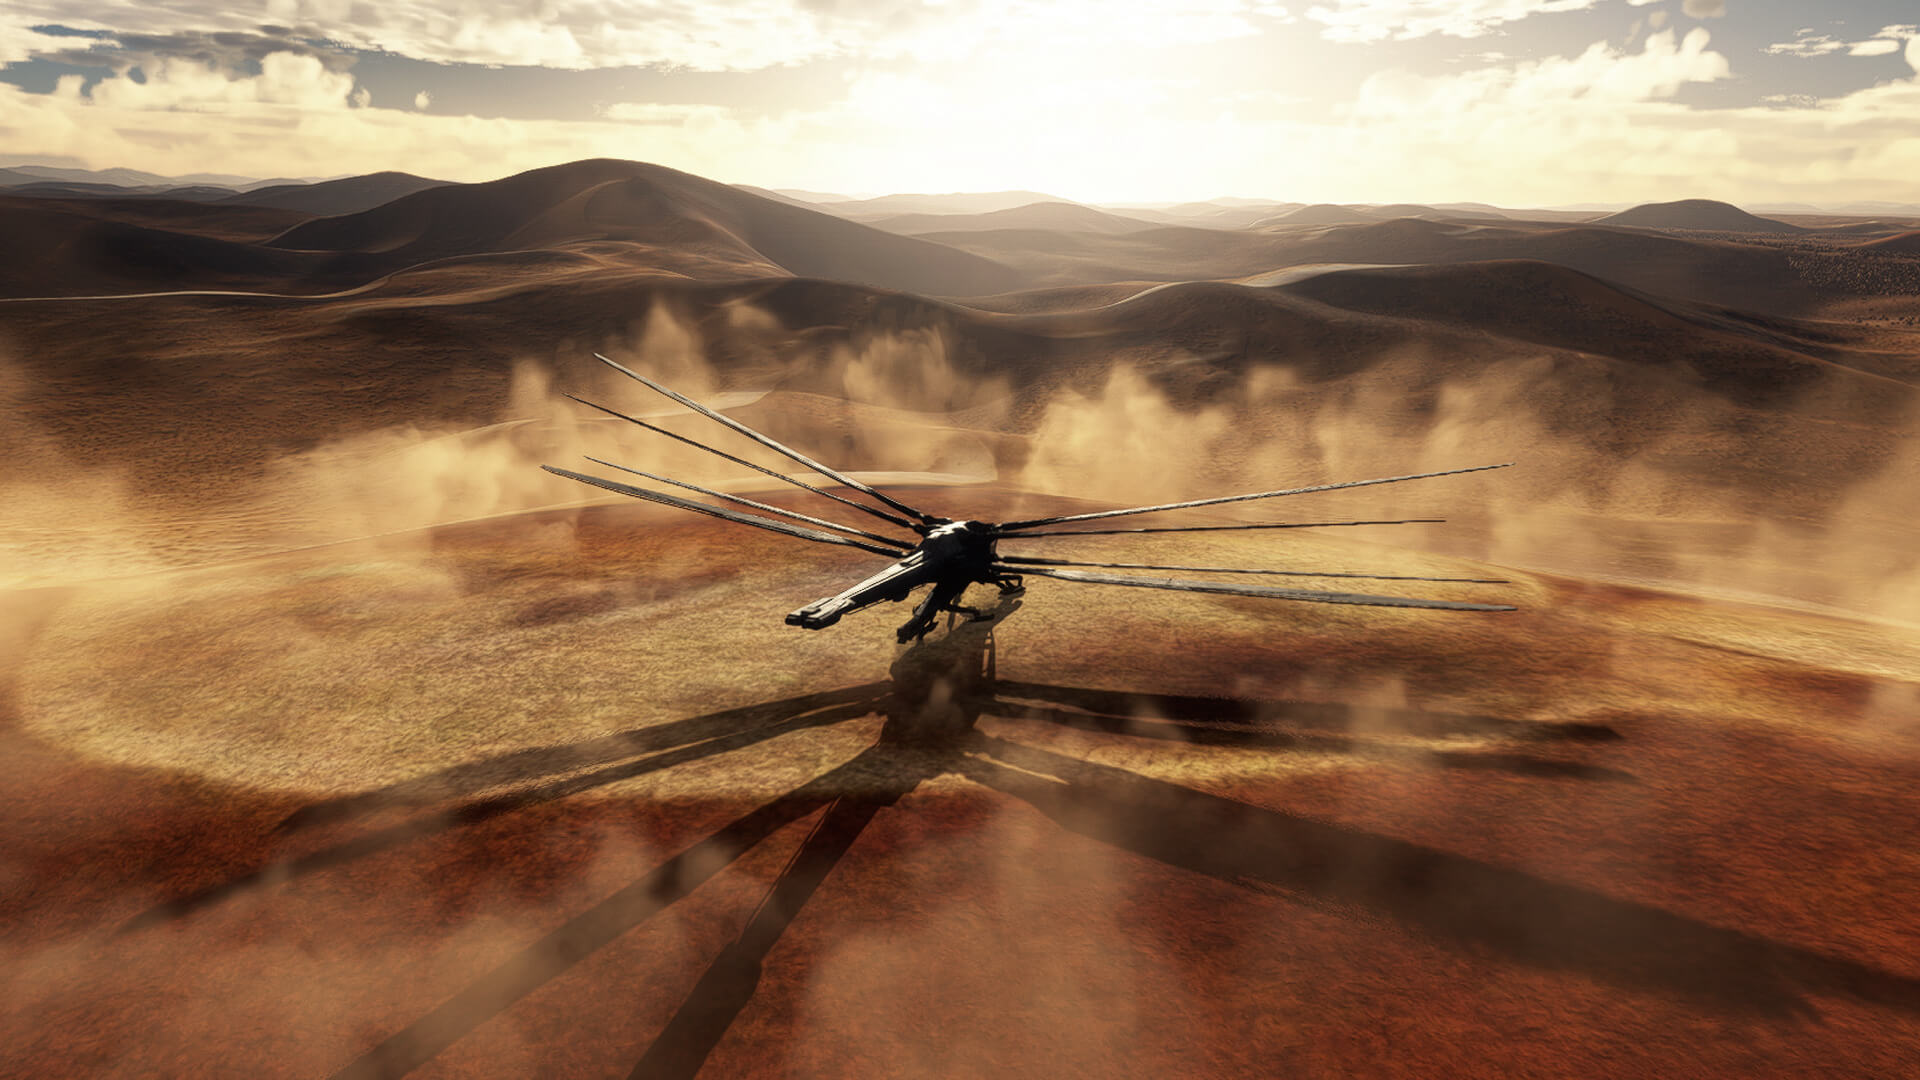 The Ornithopter picks up dust whilst making a desert landing.